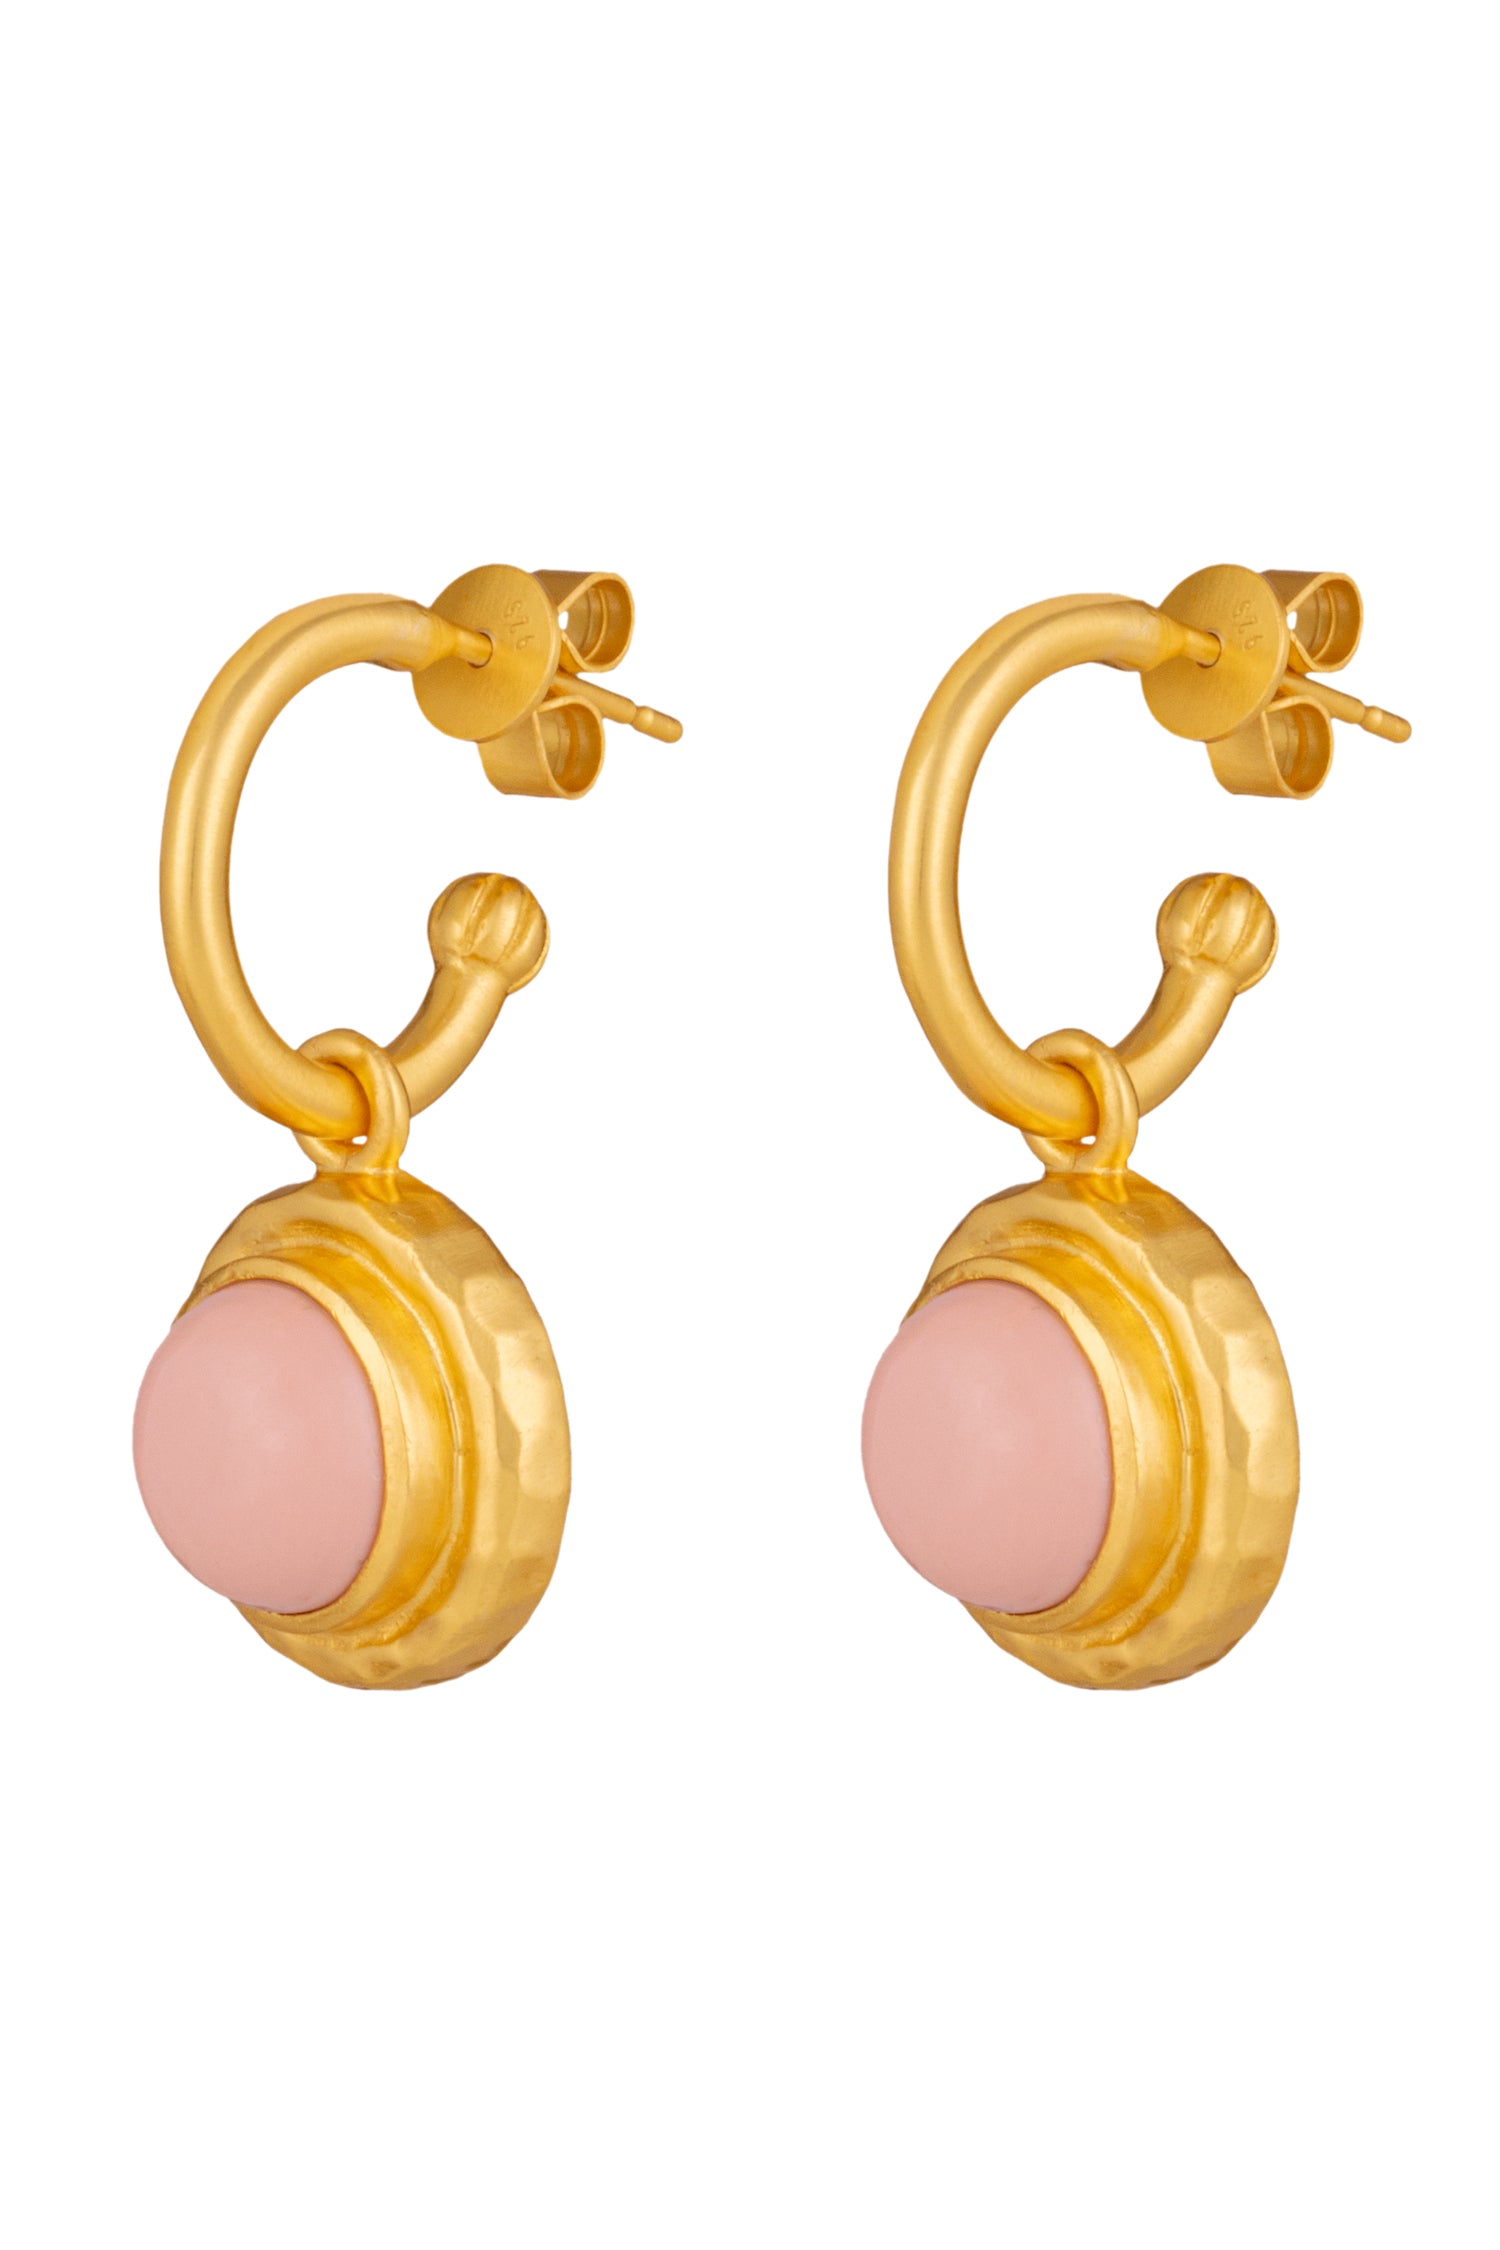 Valere Kameo Earrings - Pink Coral